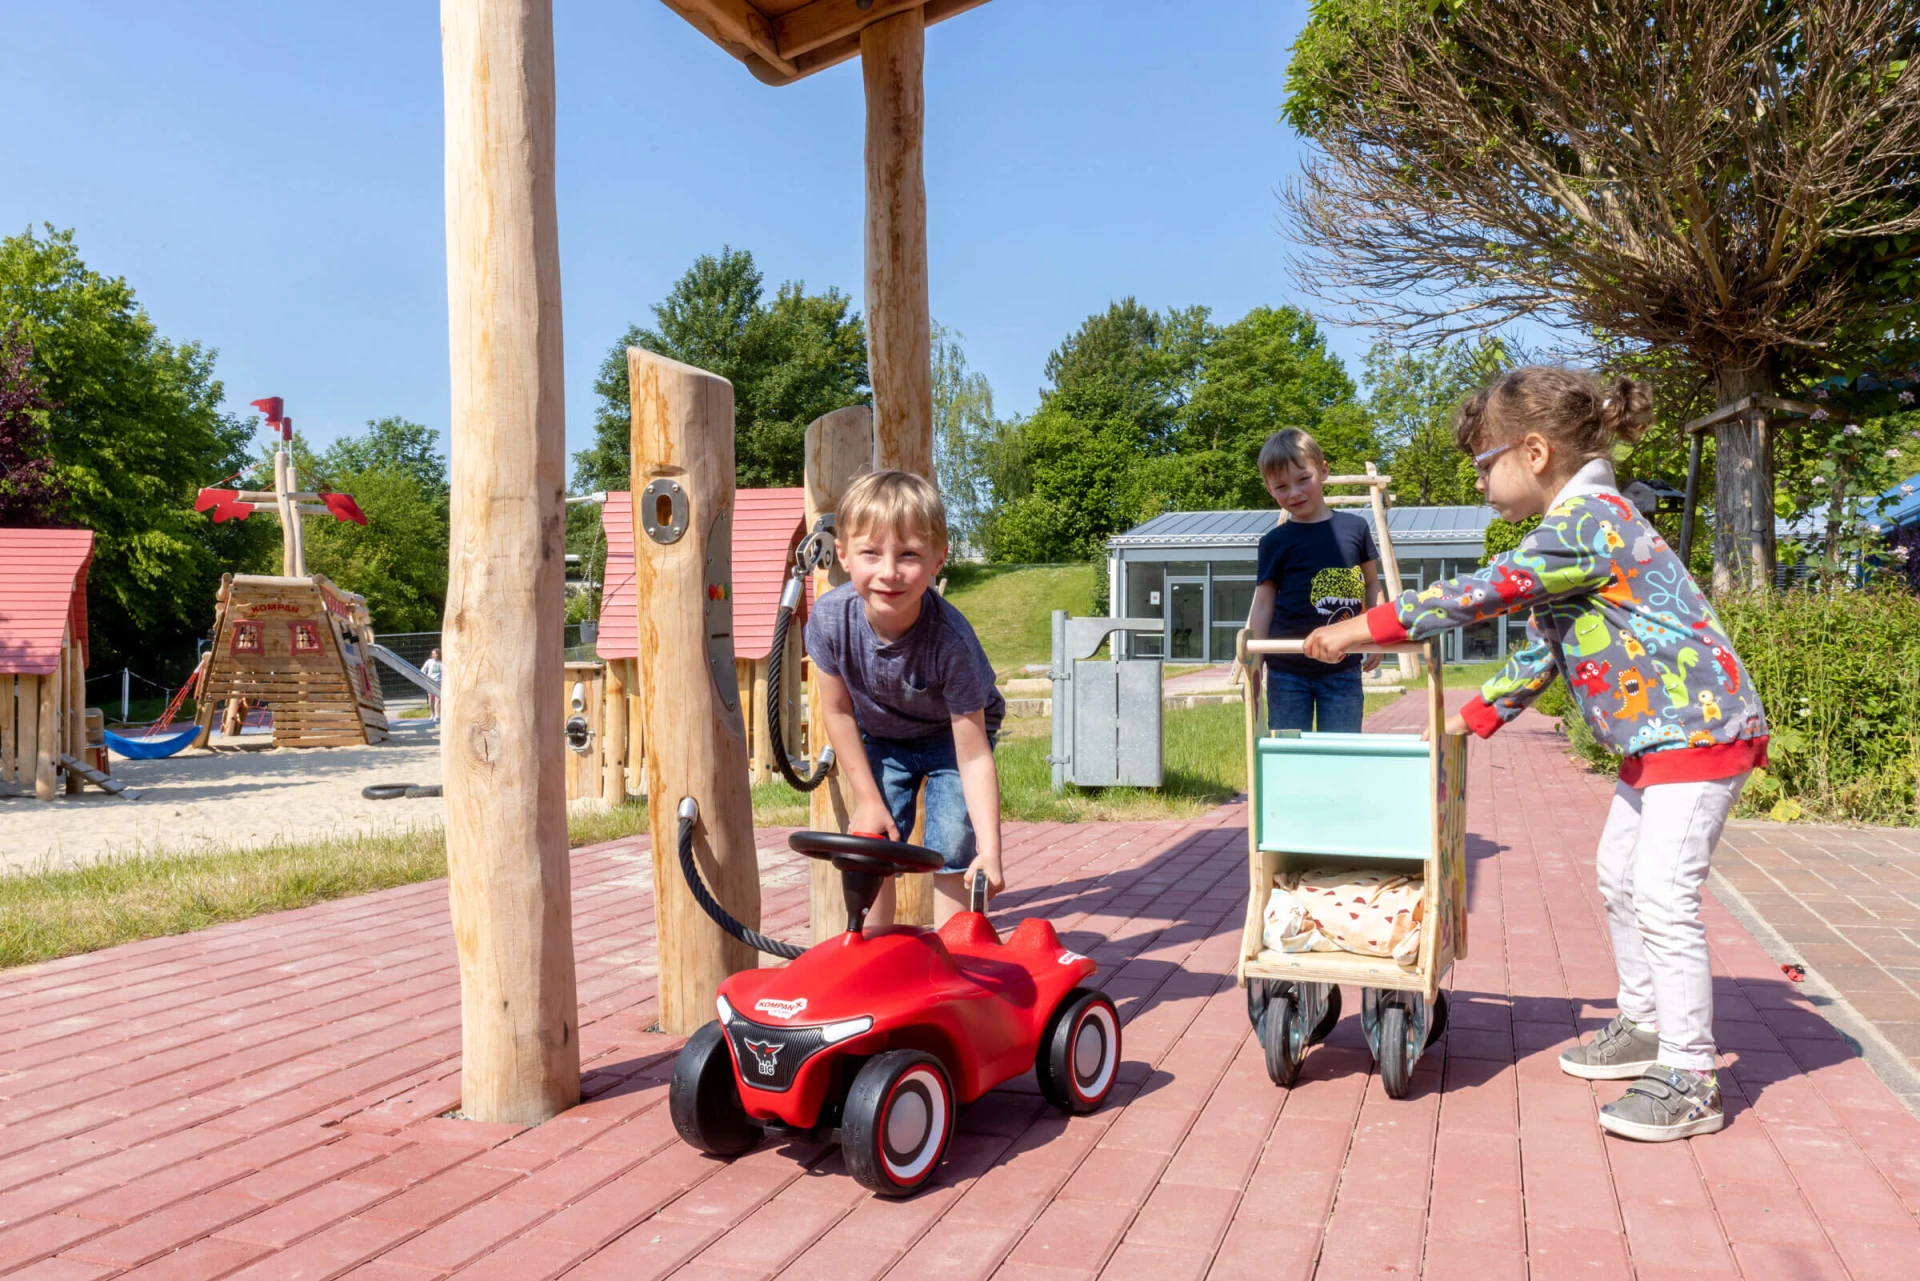 Kinder spielen auf einem Kindergartenspielplatz mit Holzgeräten